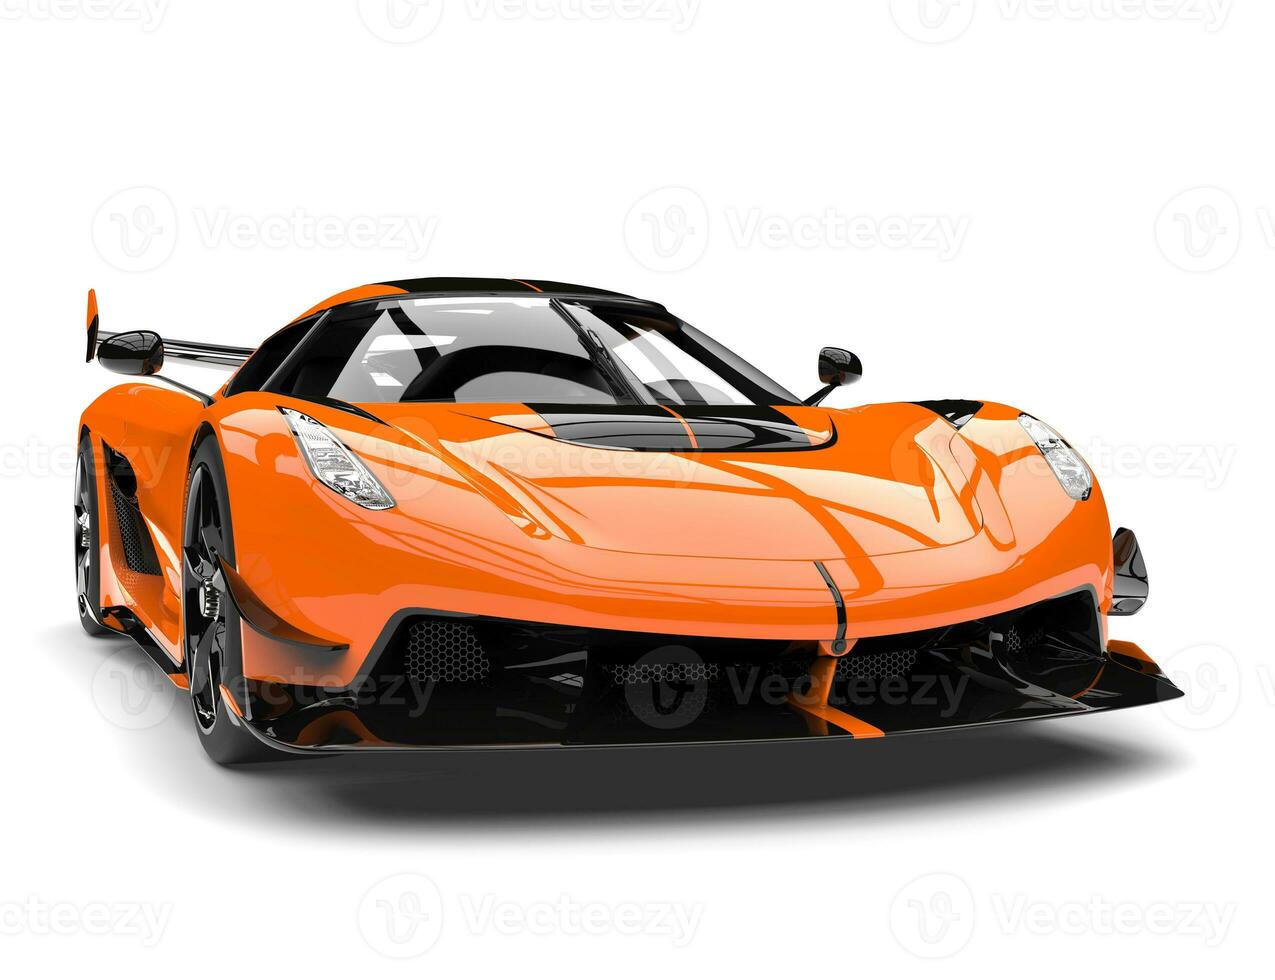 Sun orange race super car - front view closeup shot photo